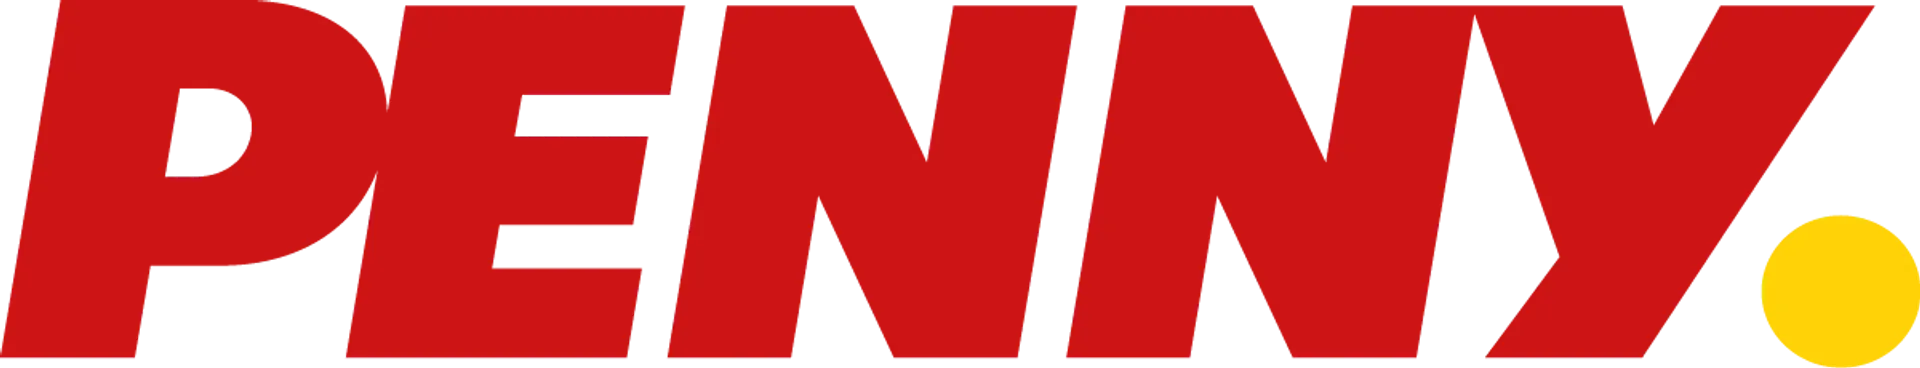 PENNY logo